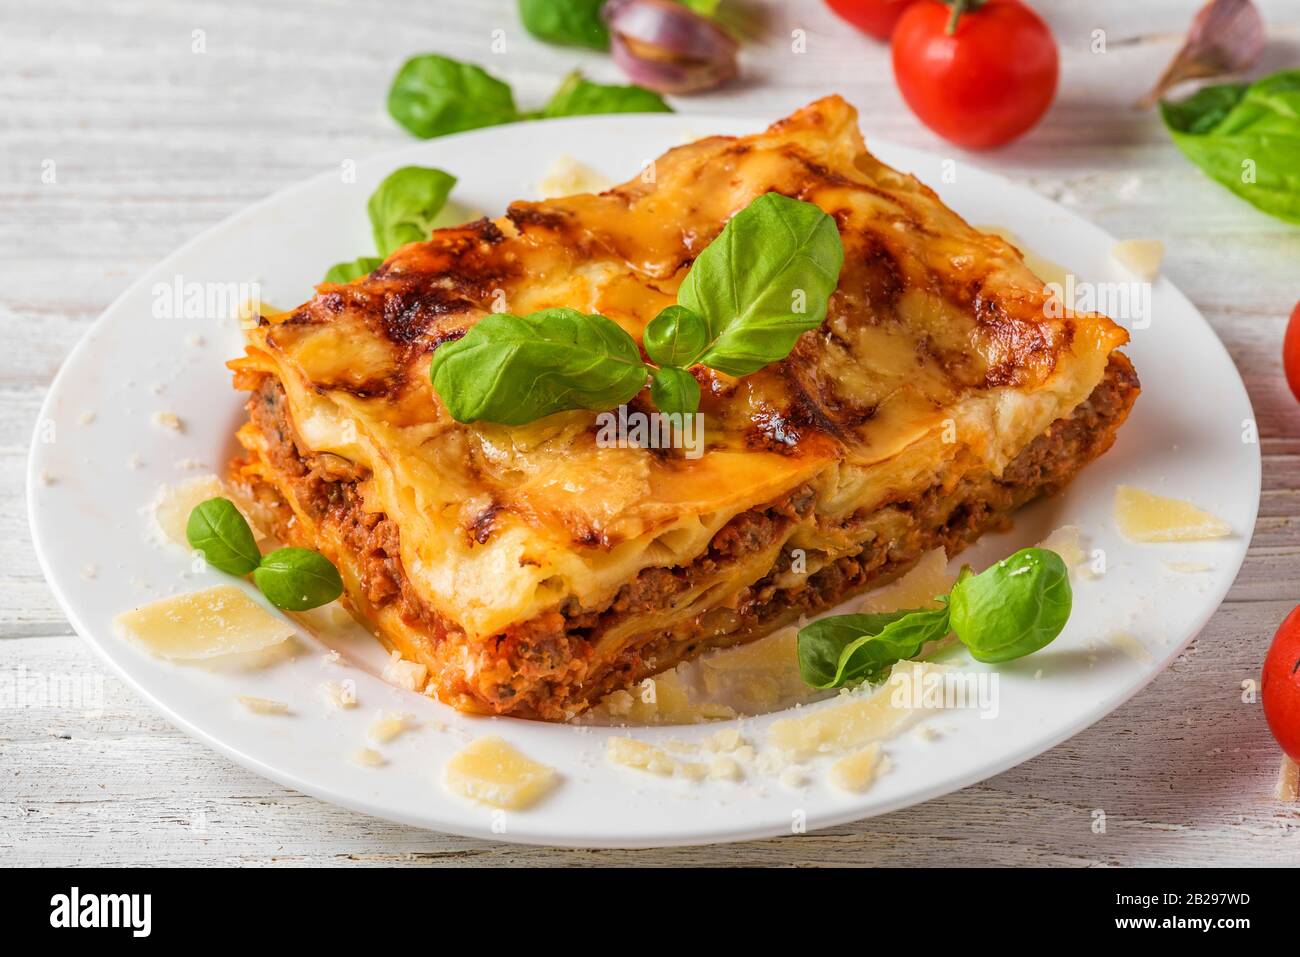 Lasagnes de viande au basilic frais et au parmesan dans une assiette sur table en bois blanc. Gros plan. Cuisine italienne. Banque D'Images